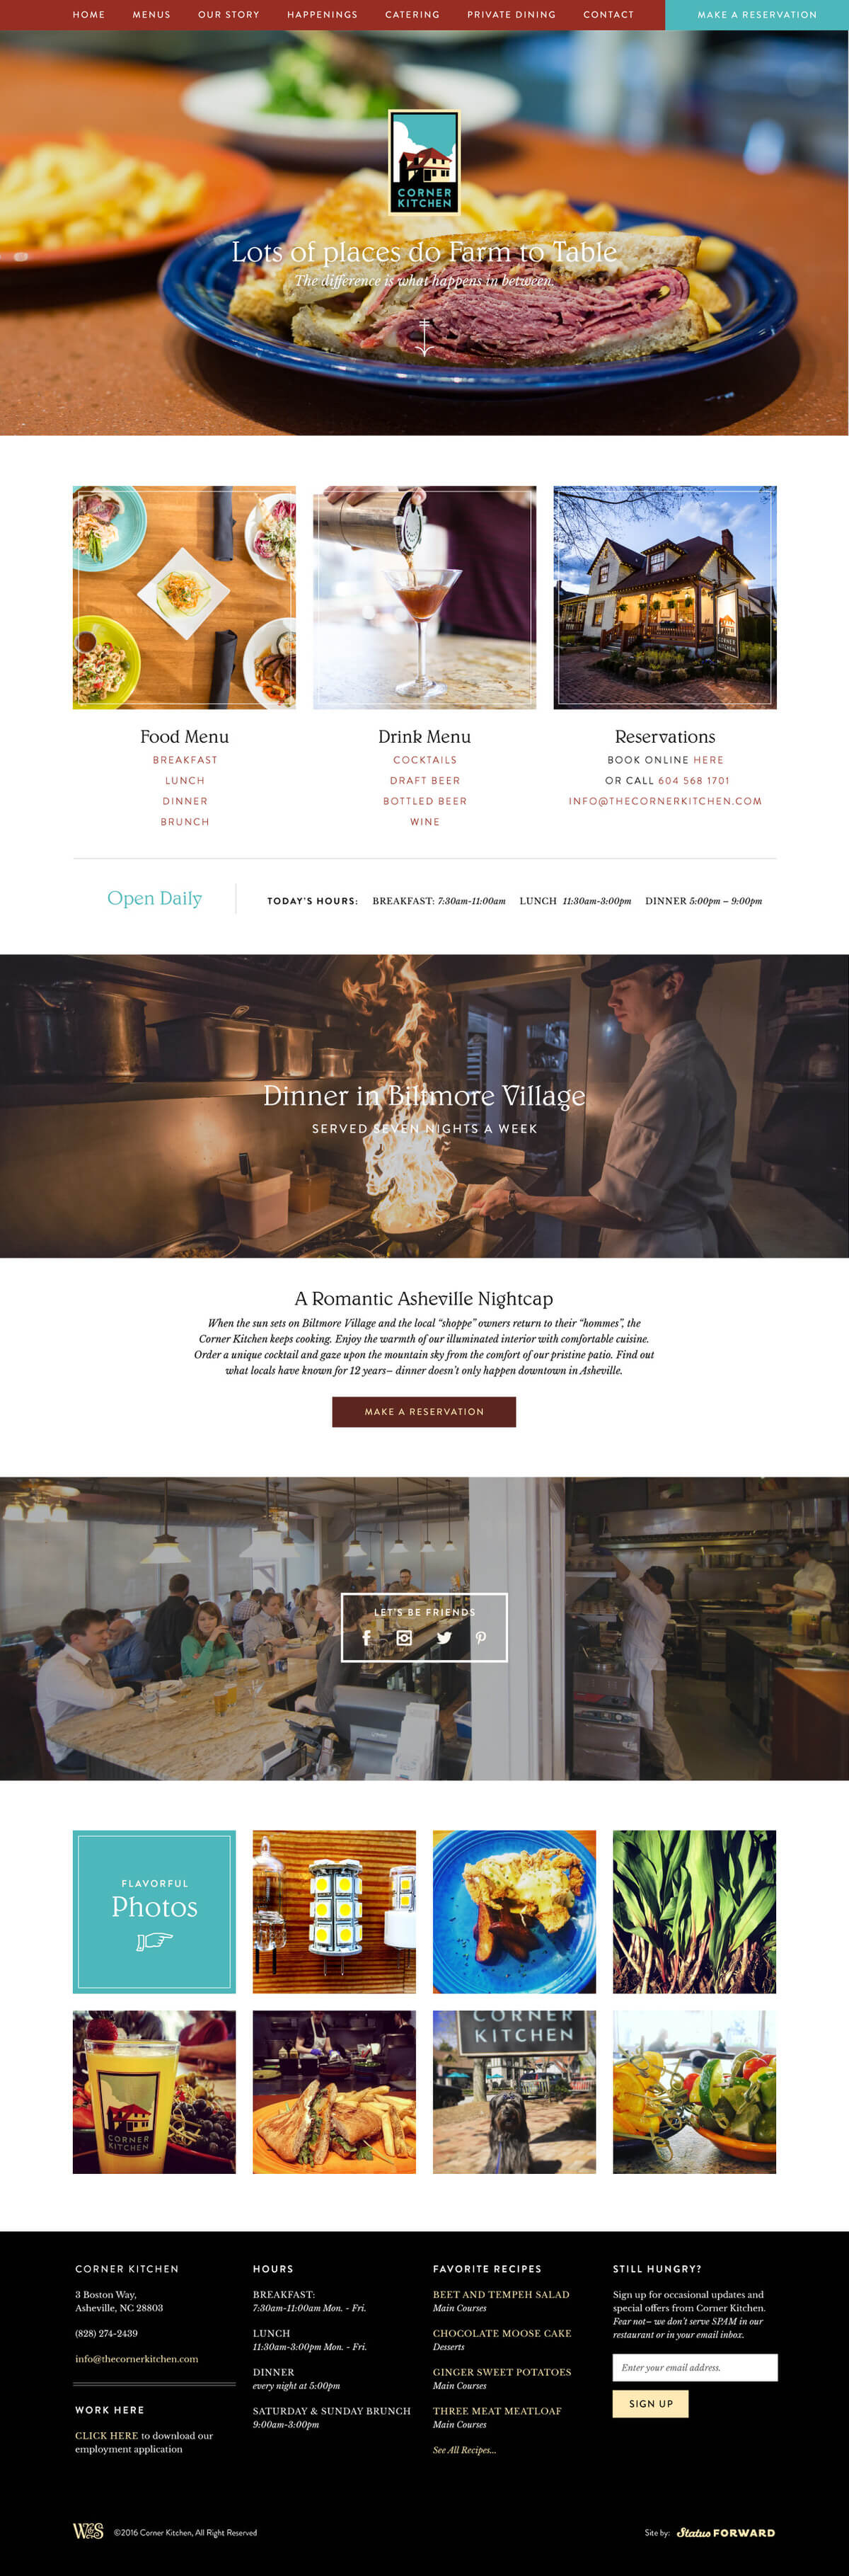 Corner Kitchen Restaurant home page design